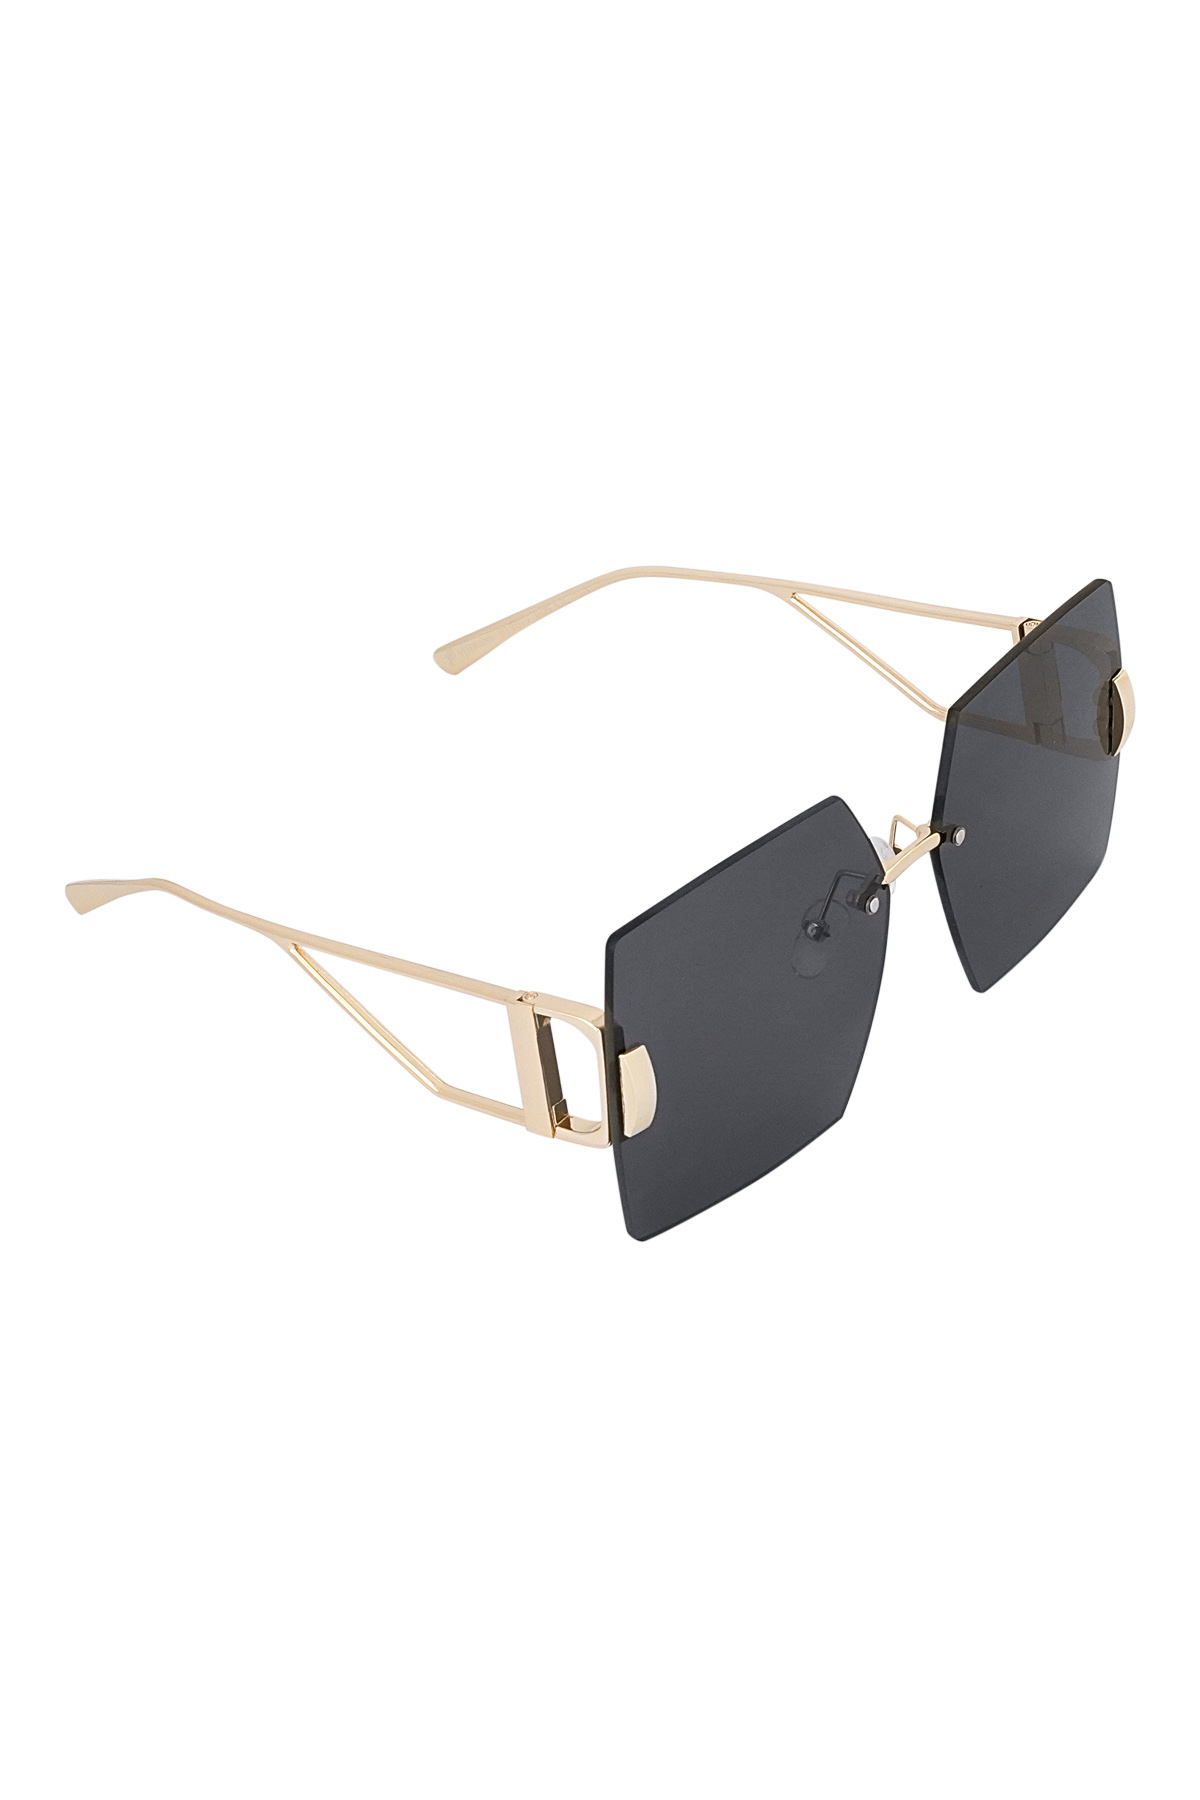 Rimless square sunglasses - gray/gold